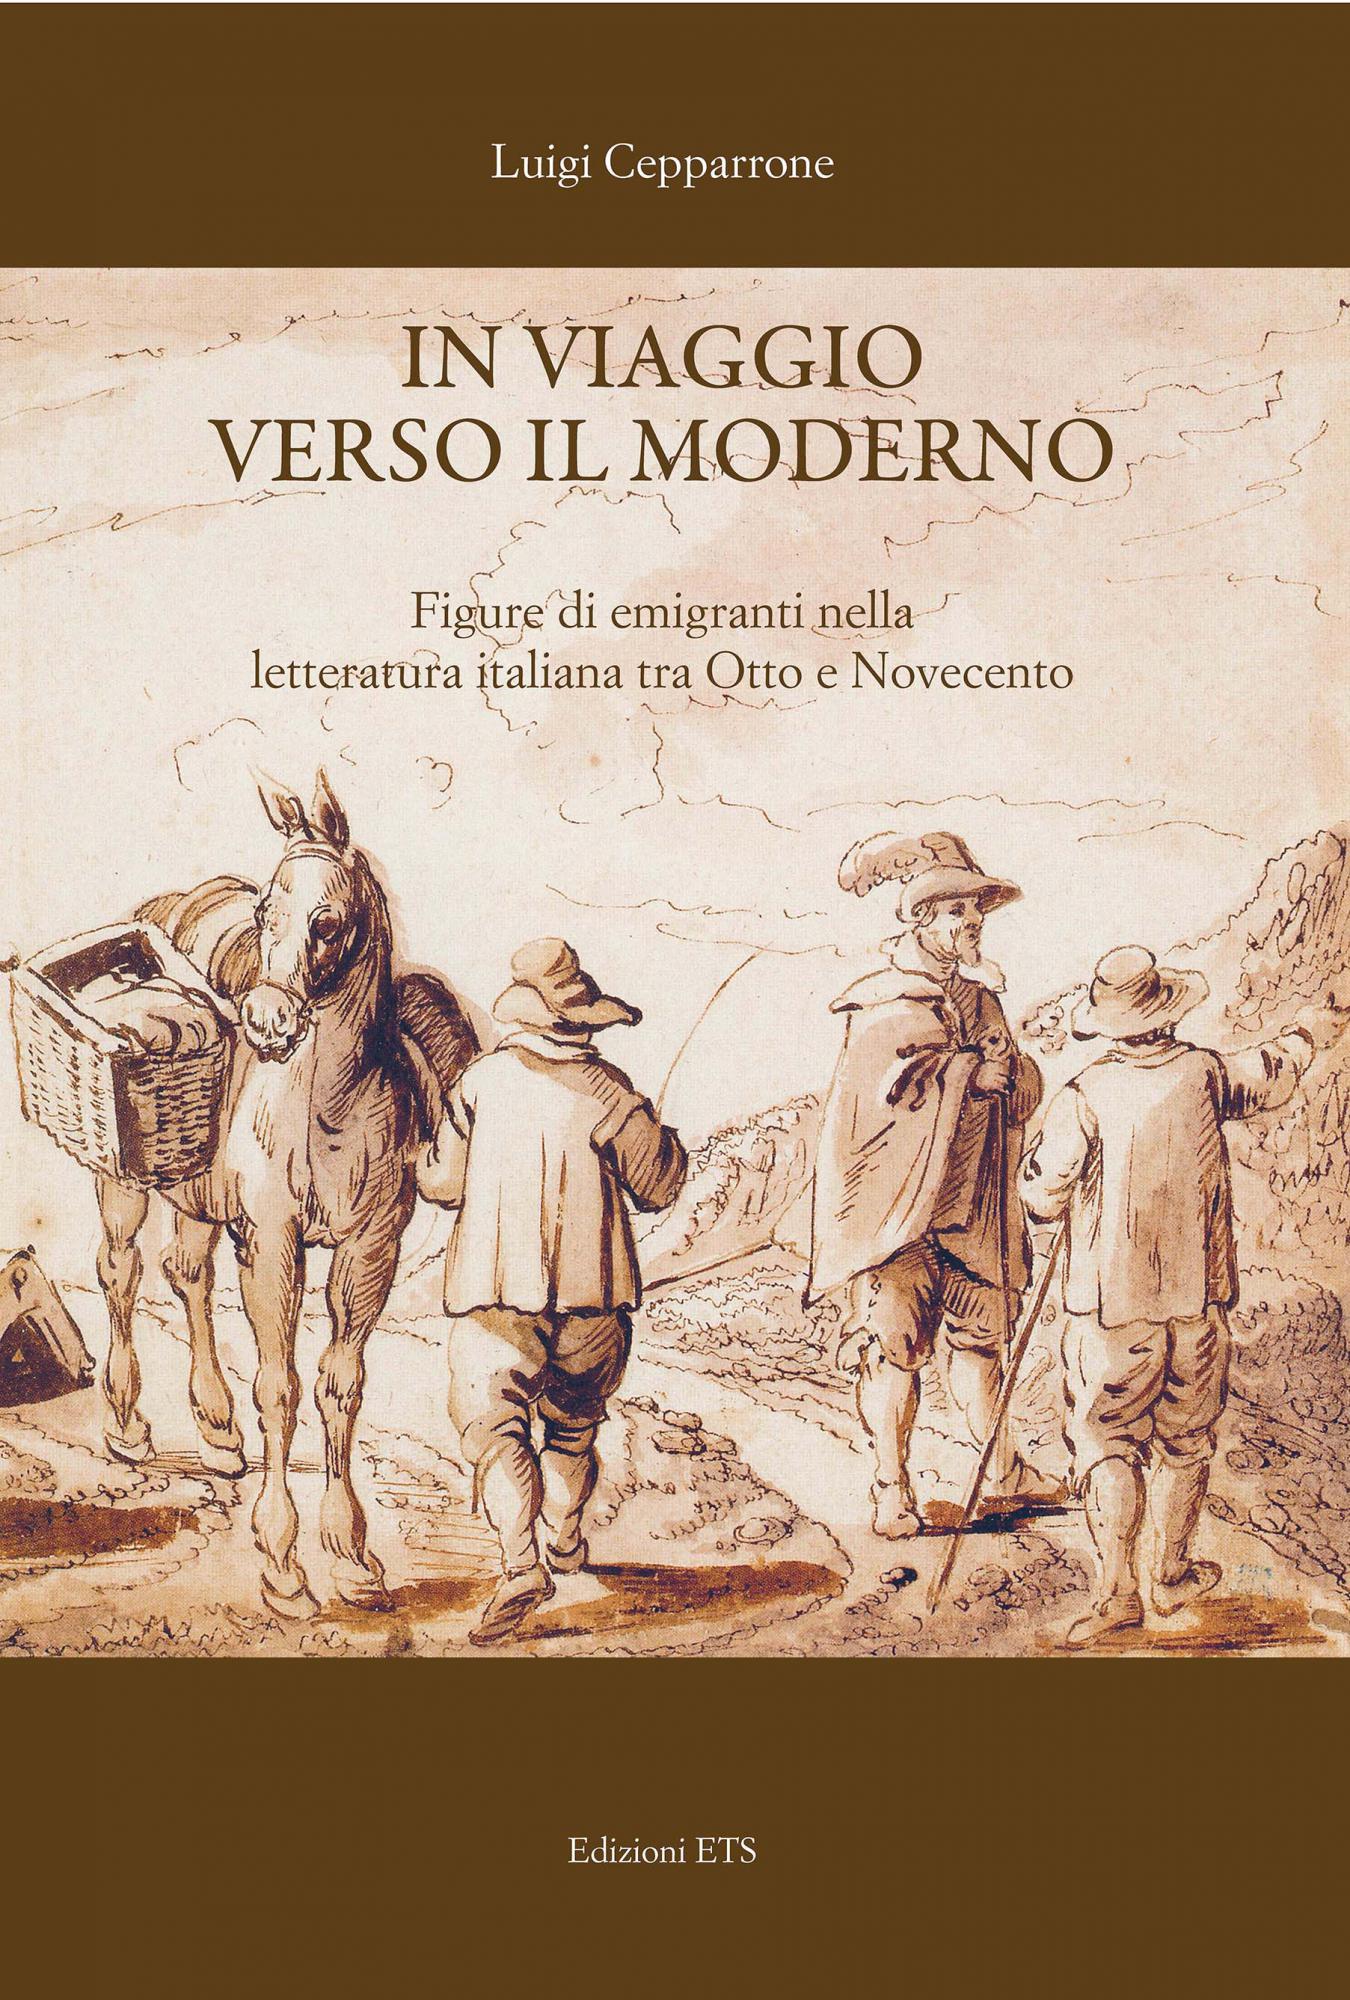 In viaggio verso il moderno.Figure di emigranti nella letteratura italiana tra Otto e Novecento